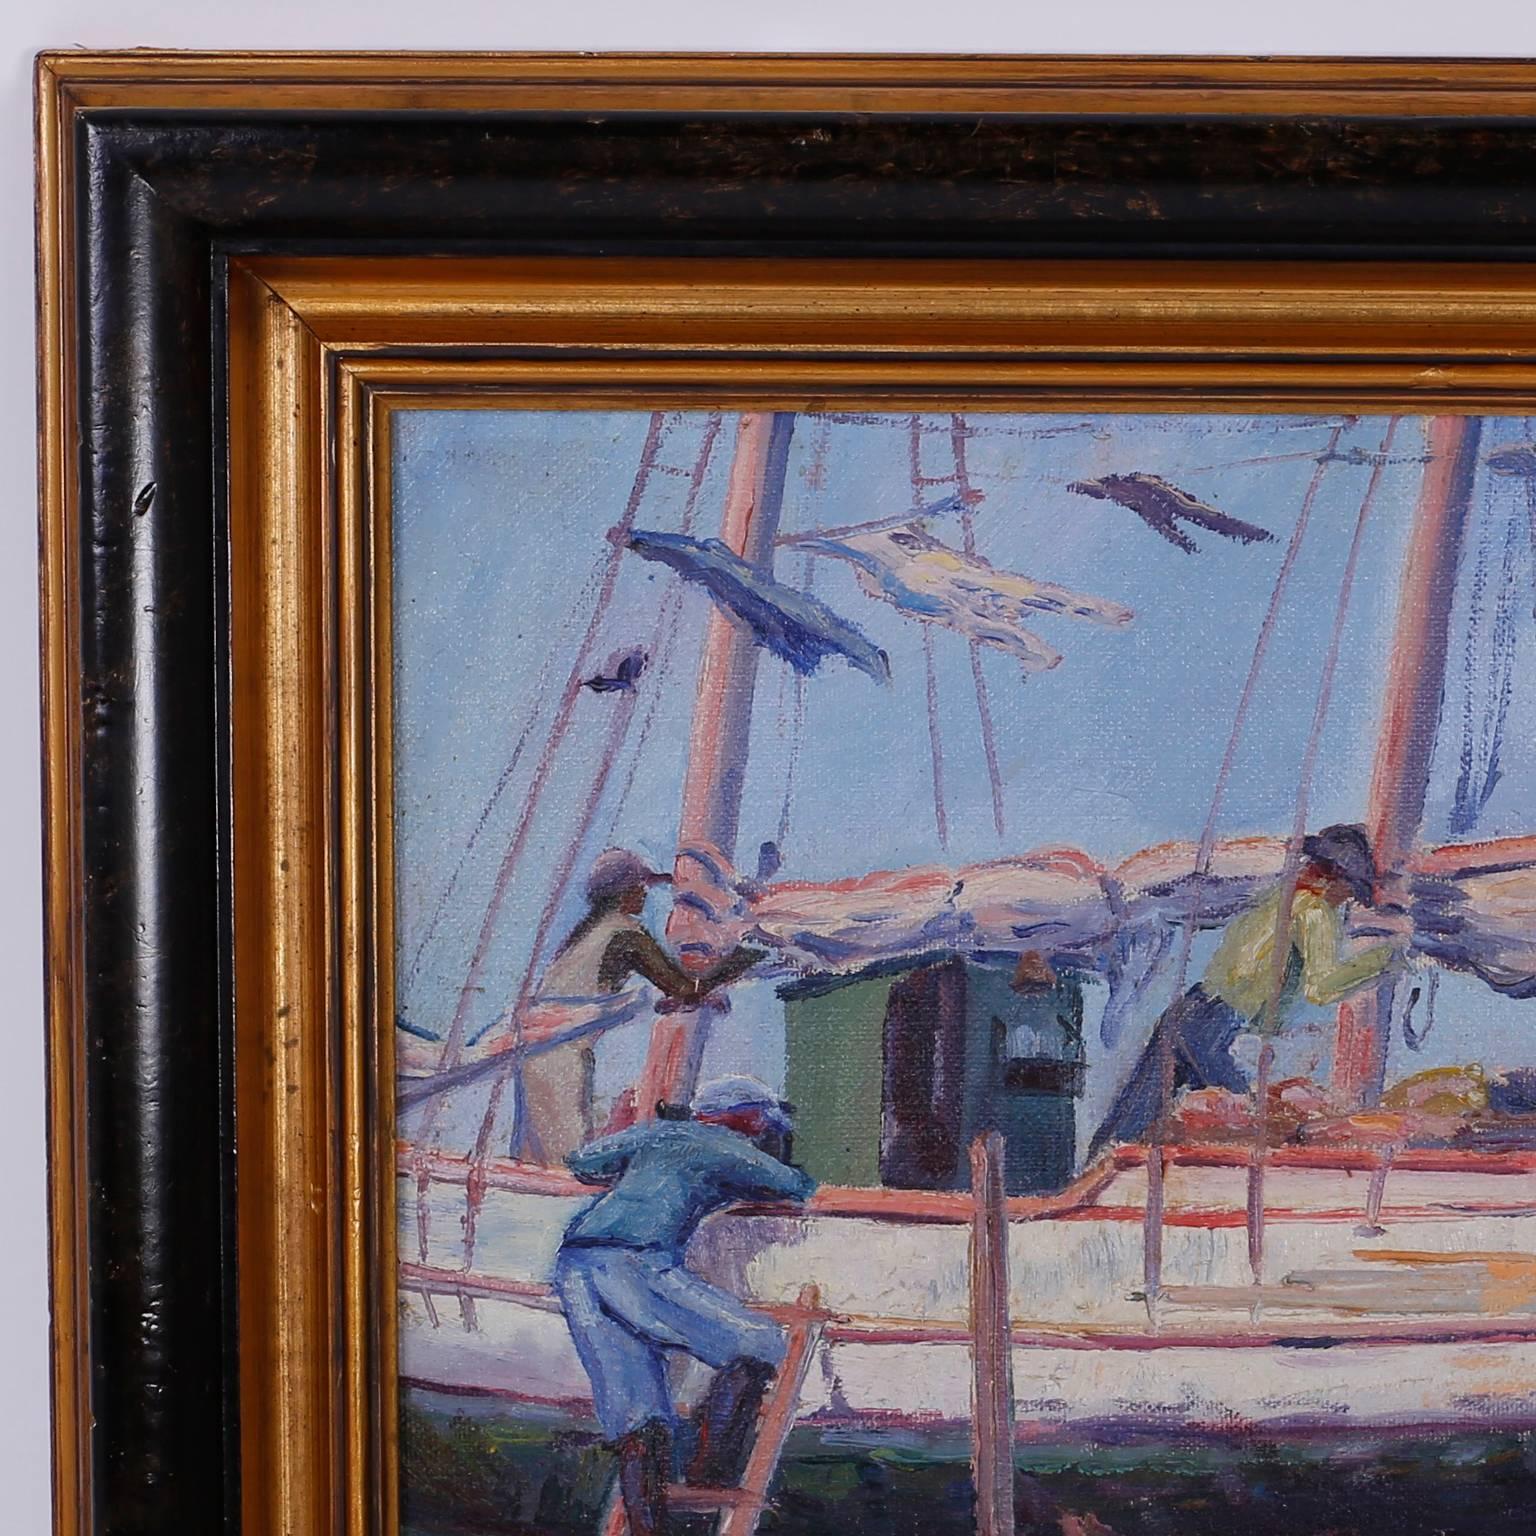 Dans la tradition des impressionnistes des années 1930, voici une peinture de H. A. Burnham représentant une scène portuaire, avec des coups de pinceau assurés et une palette tropicale saisissante. Cette peinture à l'huile capture l'esprit simple de